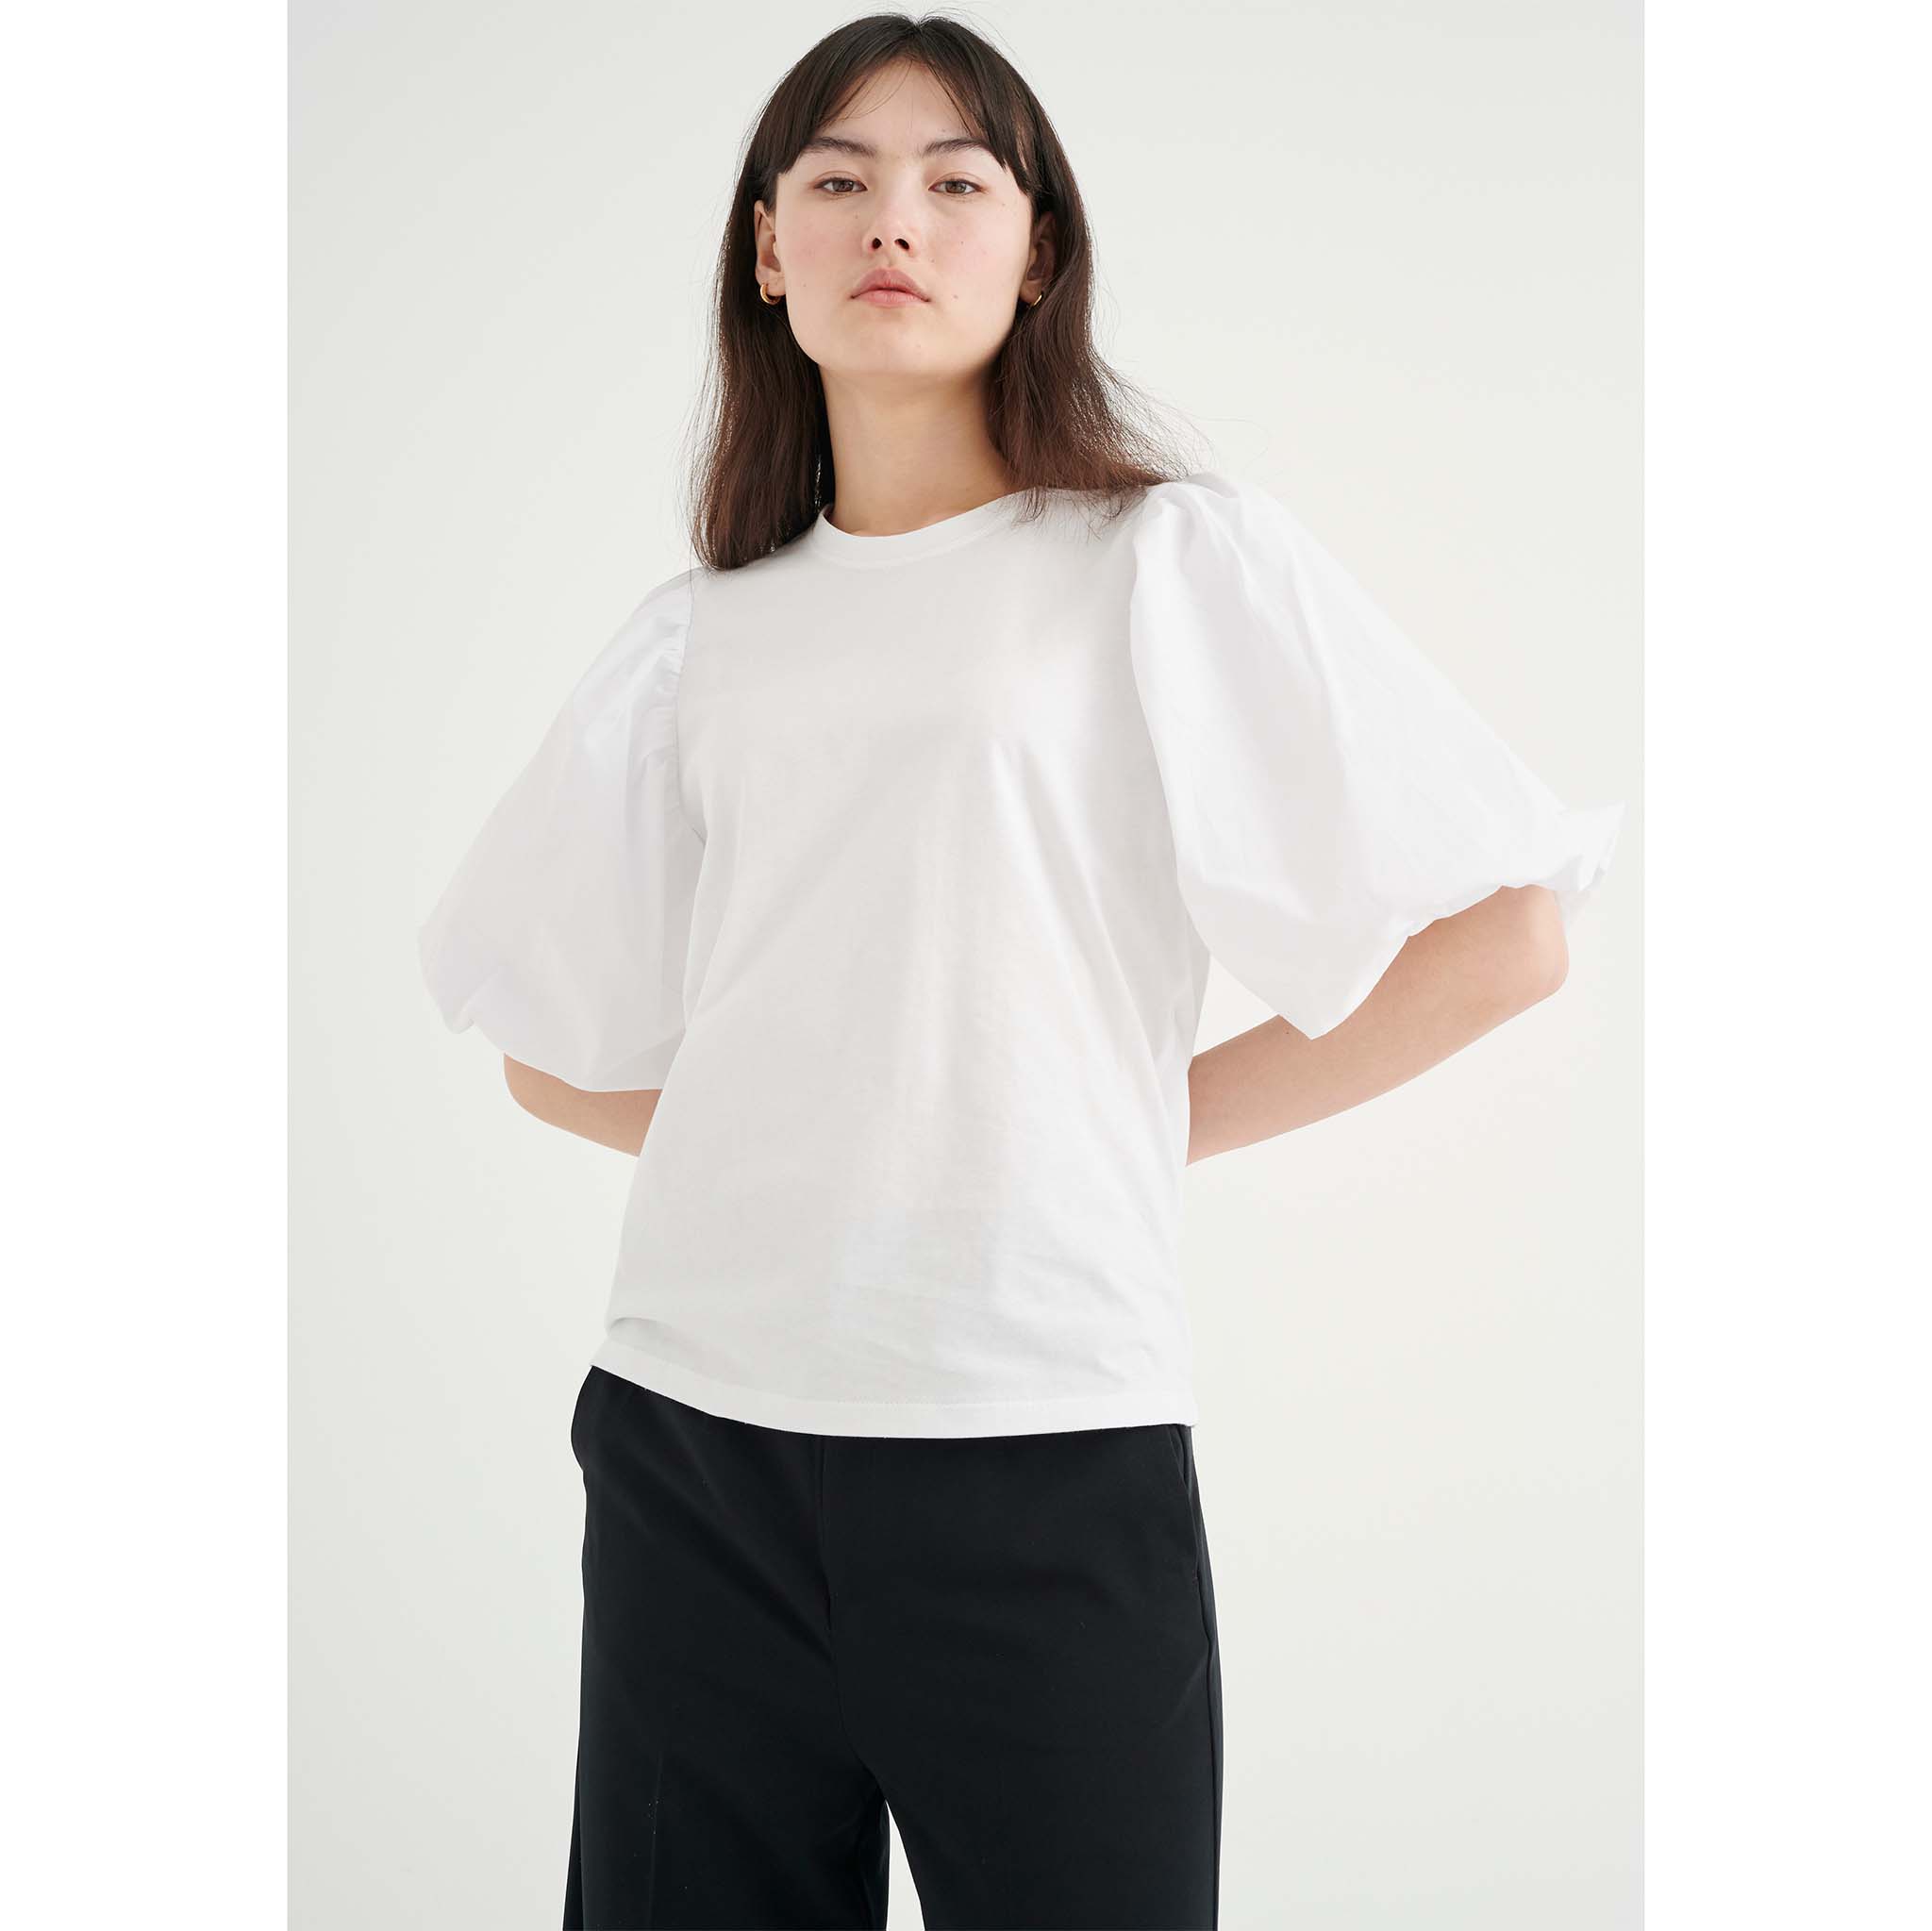 In Wear, valkoinen t-paita, jossa suuret puhvihihat. Etukuva mallin päällä.